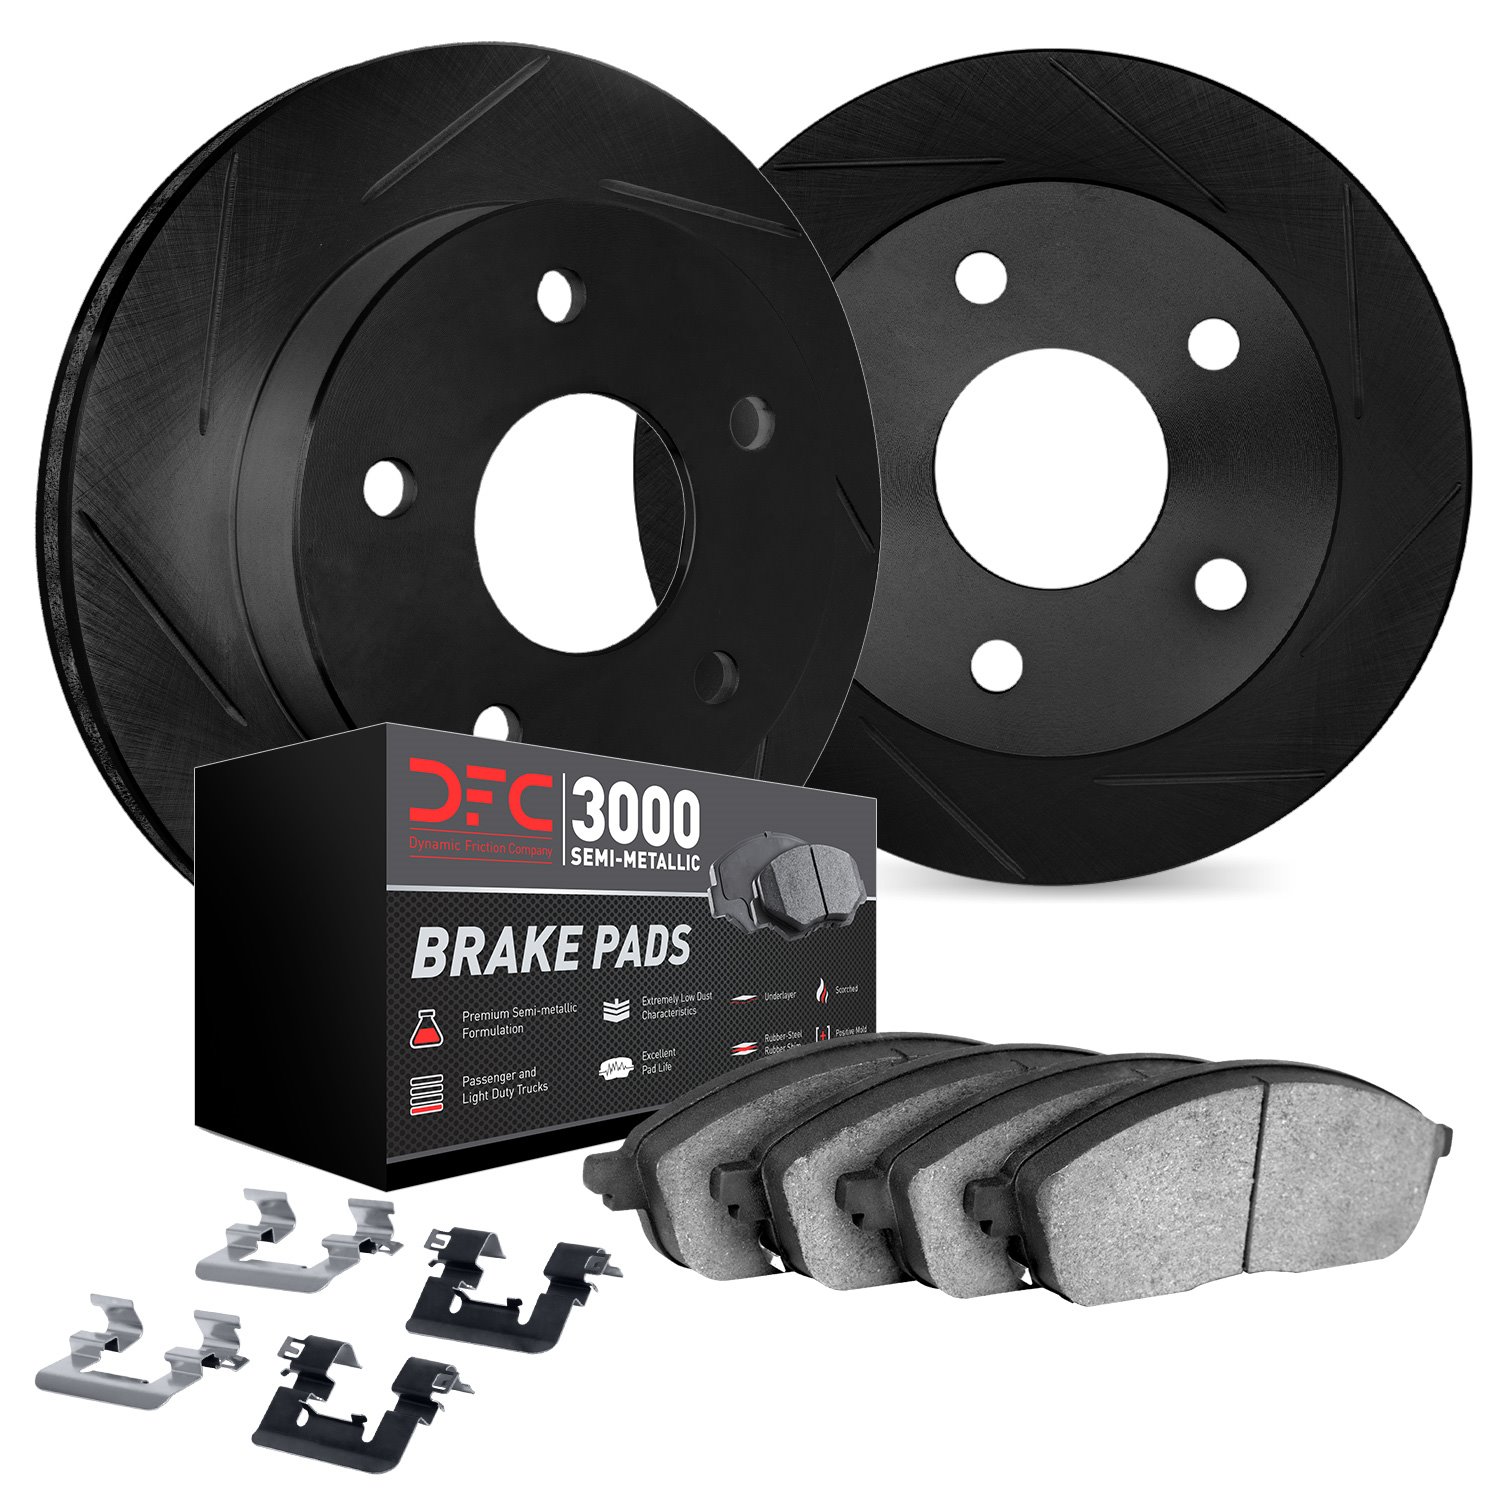 3112-74088 Slotted Brake Rotors with 3000-Series Semi-Metallic Brake Pads Kit & Hardware [Black], 2009-2020 Audi/Volkswagen, Pos